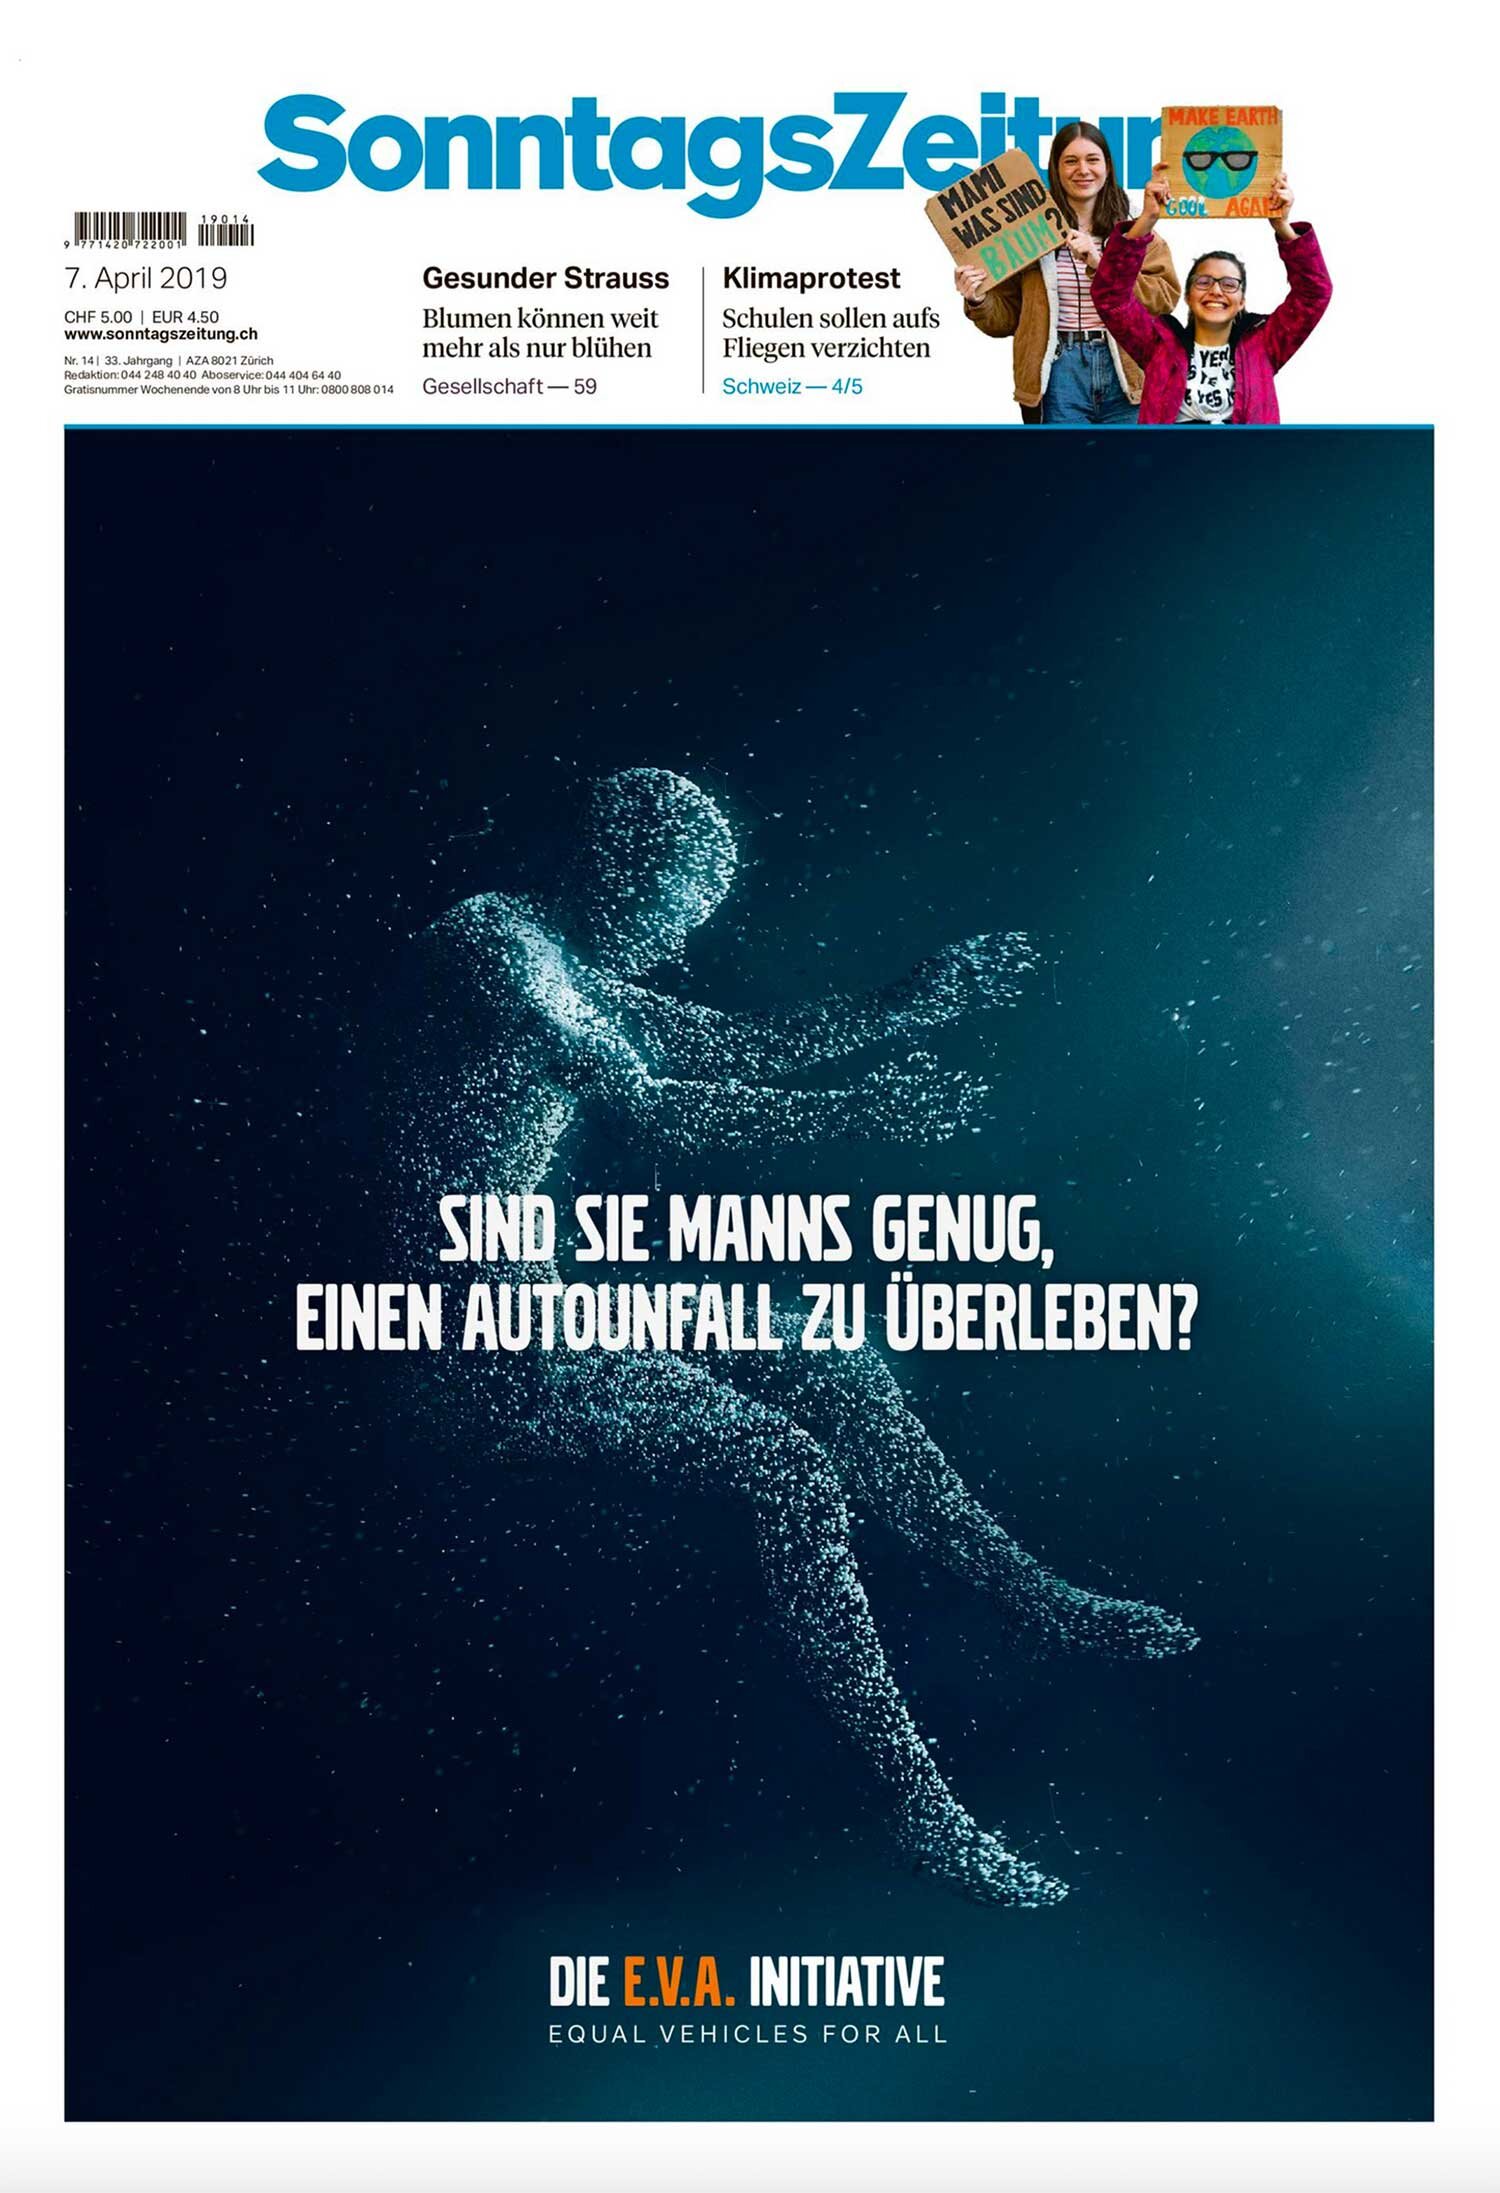 Sonntagszeitung-Cover-april2019-1-web.jpg